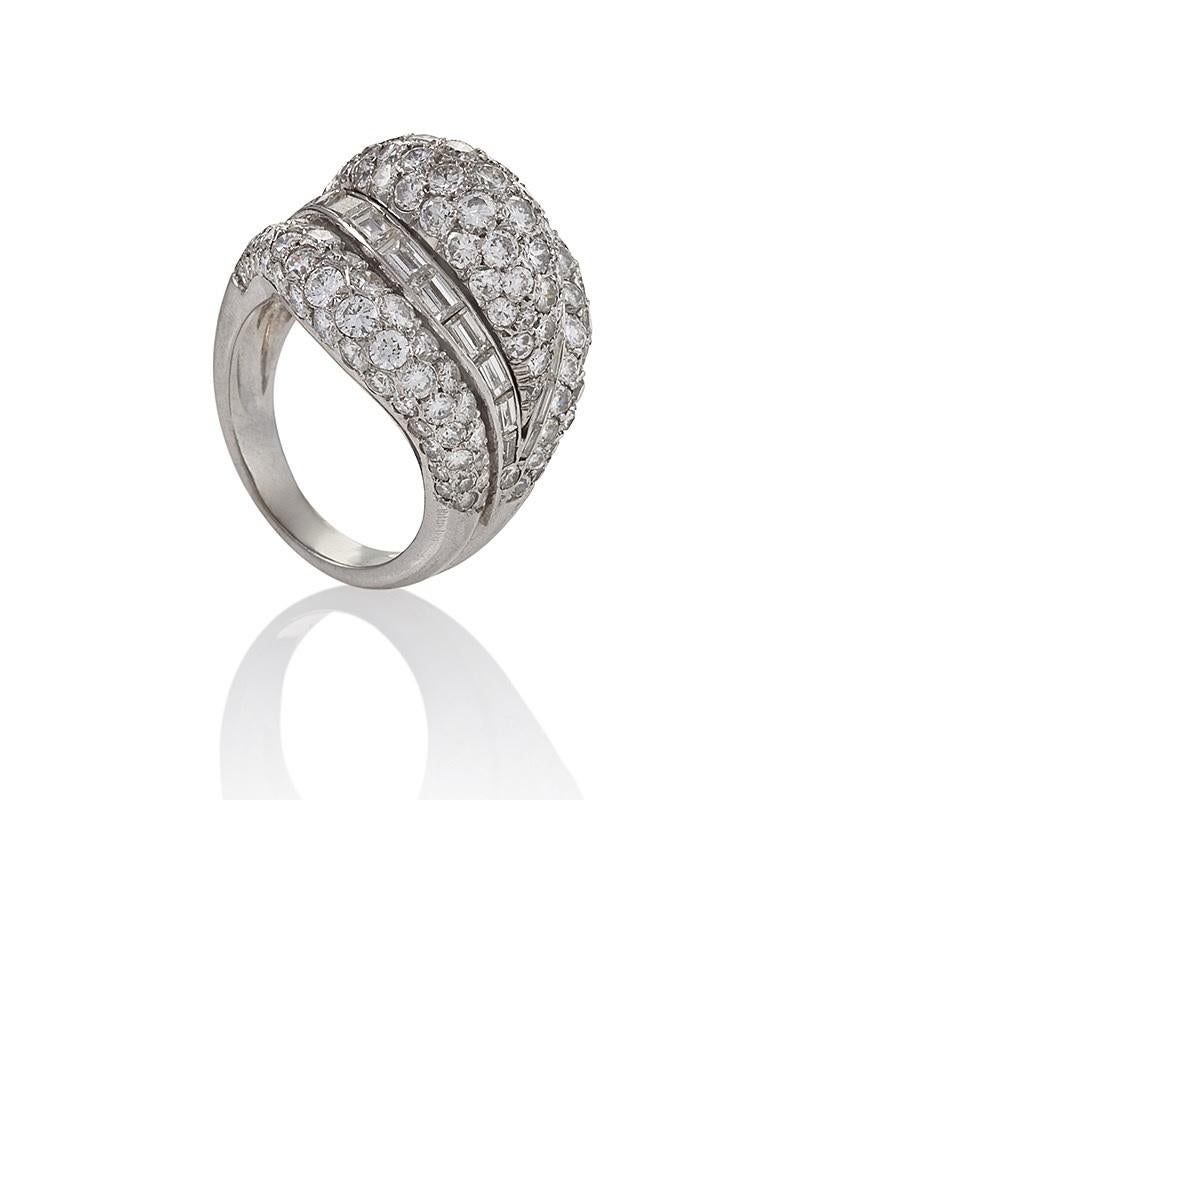 Dieser Bombé-Ring von Van Cleef & Arpels aus der Mitte des Jahrhunderts ist ein auffallendes und sinnliches Design, das mit über zehn Karat Diamanten besetzt ist. Die voluminöse Form, die von runden Brillanten durchzogen und von stromlinienförmigen